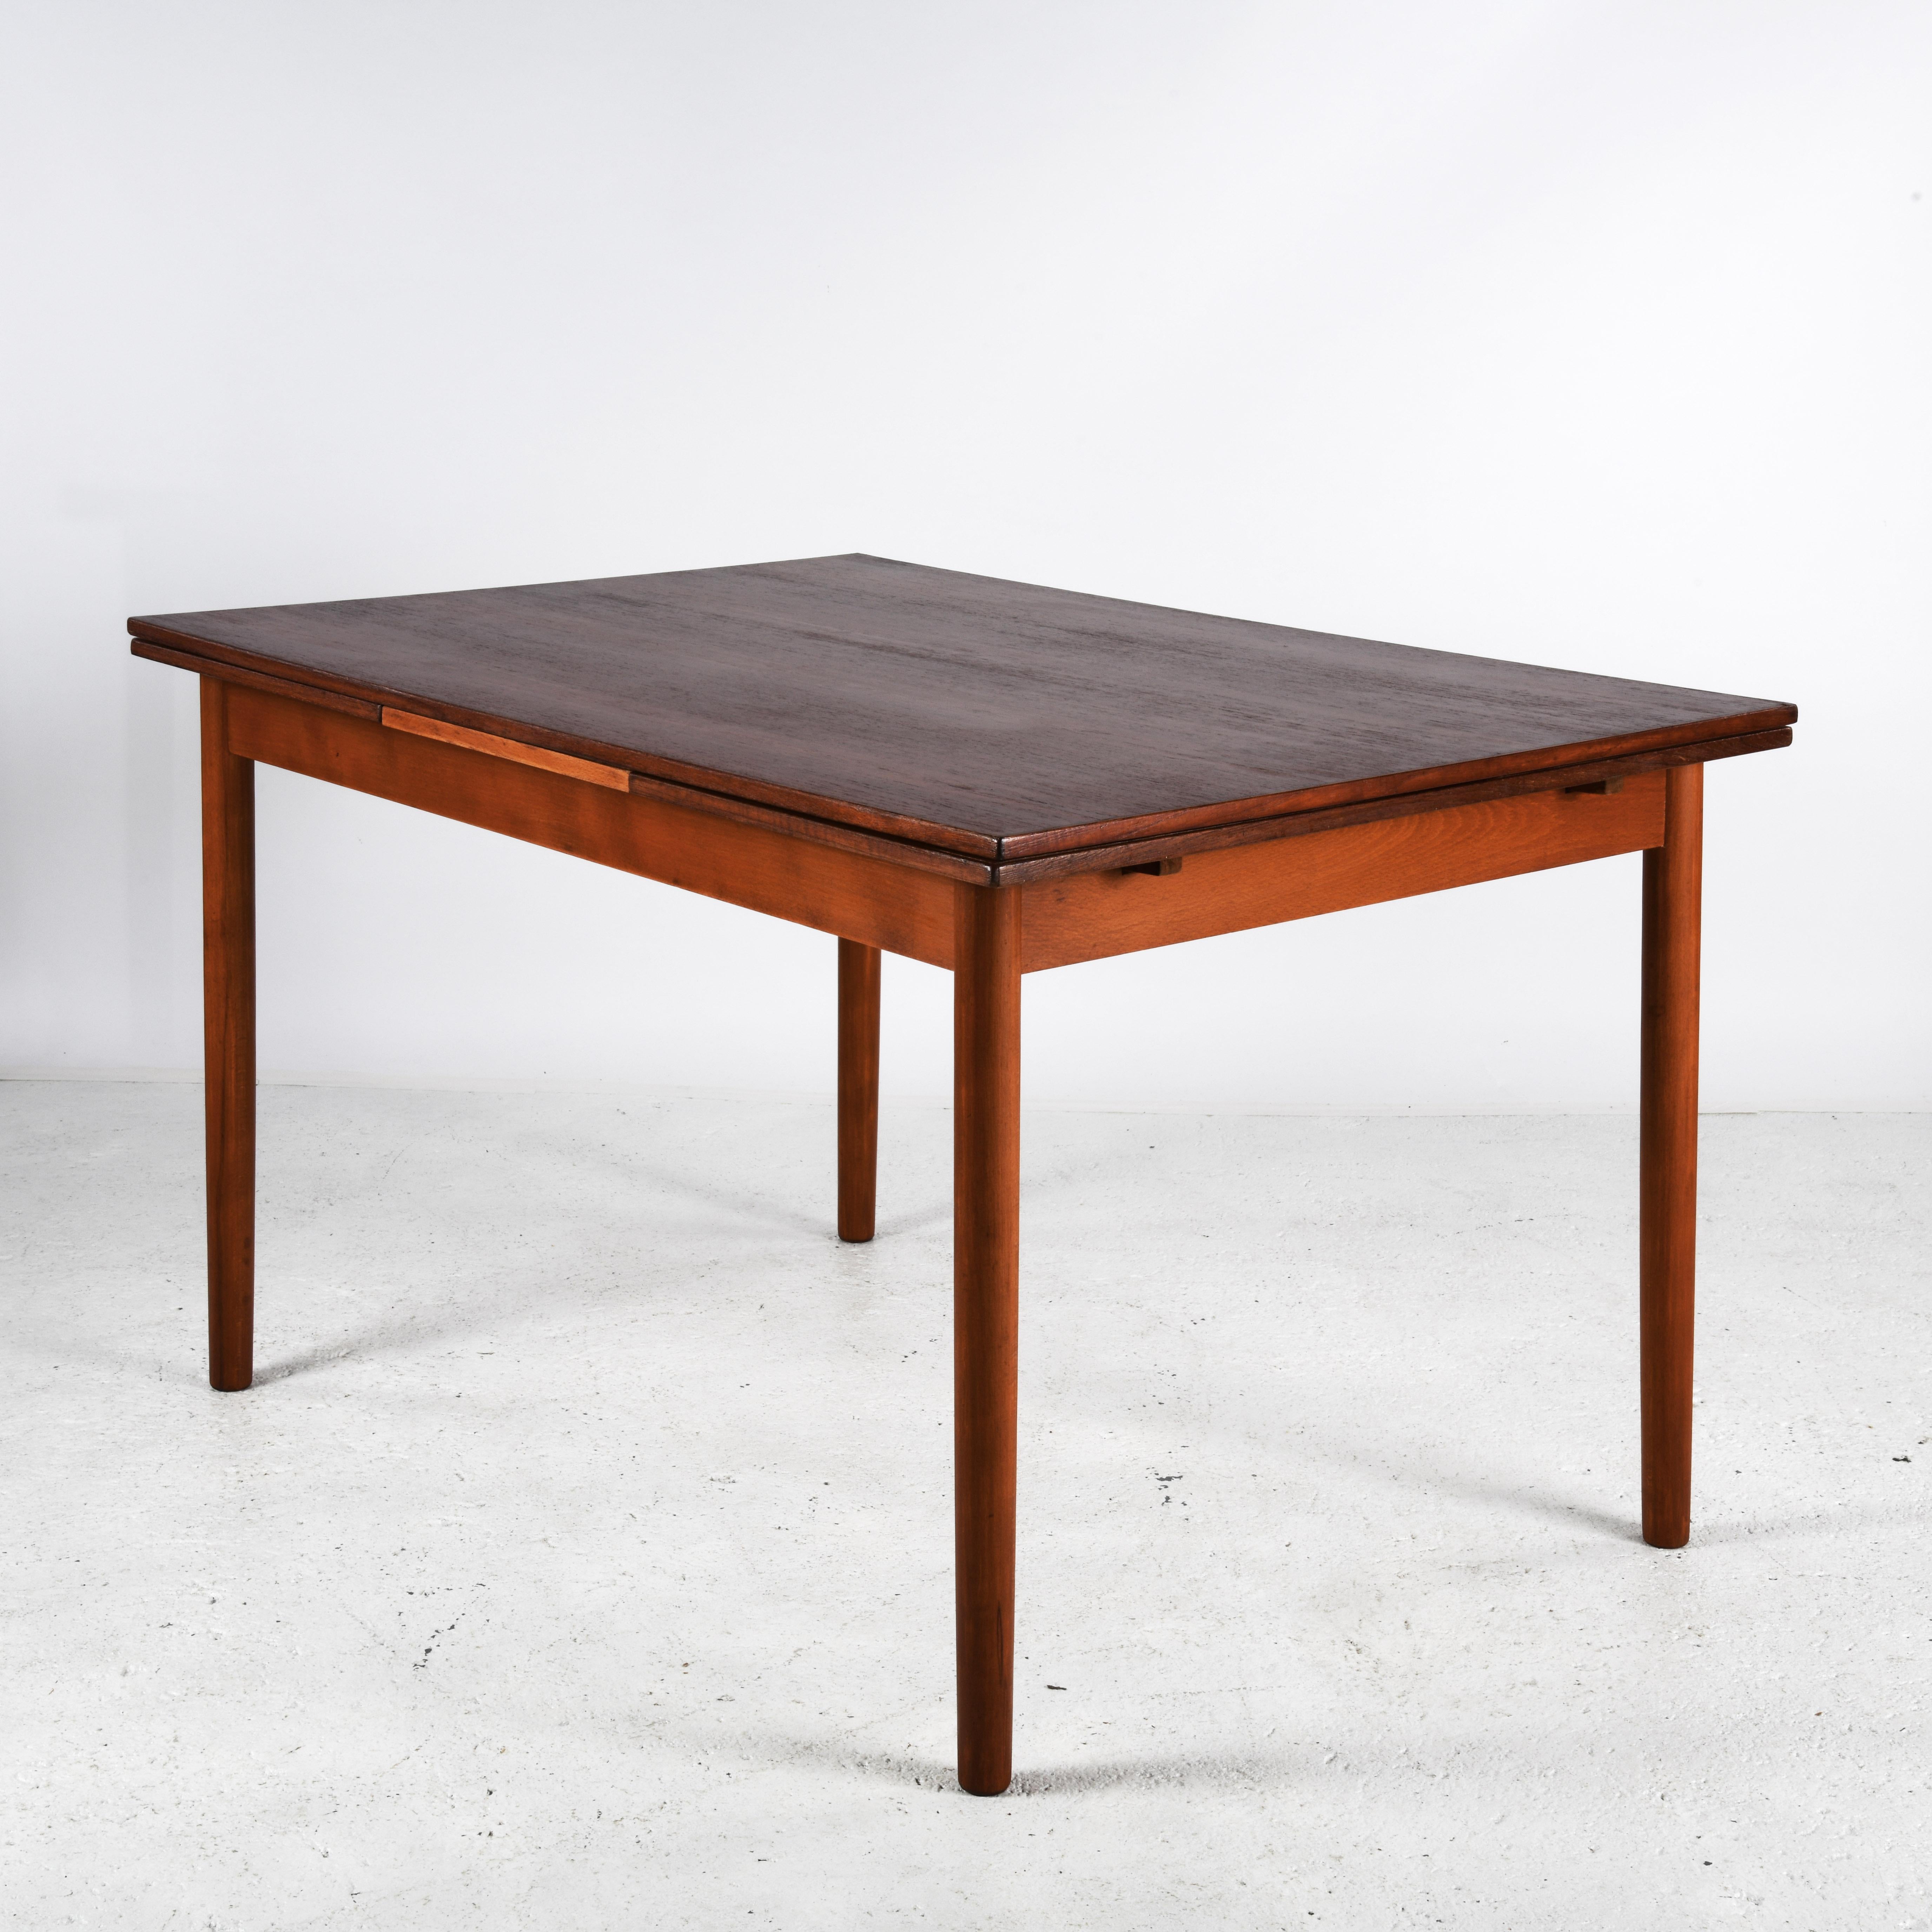 Esstisch aus Teakholz aus Dänemark, hergestellt in den 1960er/70er Jahren. Der Tisch hat eine Platte und zwei ausziehbare Blätter darunter. Die Platten sind mit einem Satinlack geschützt und können ohne Tischtuch verwendet werden. Die Beine lassen